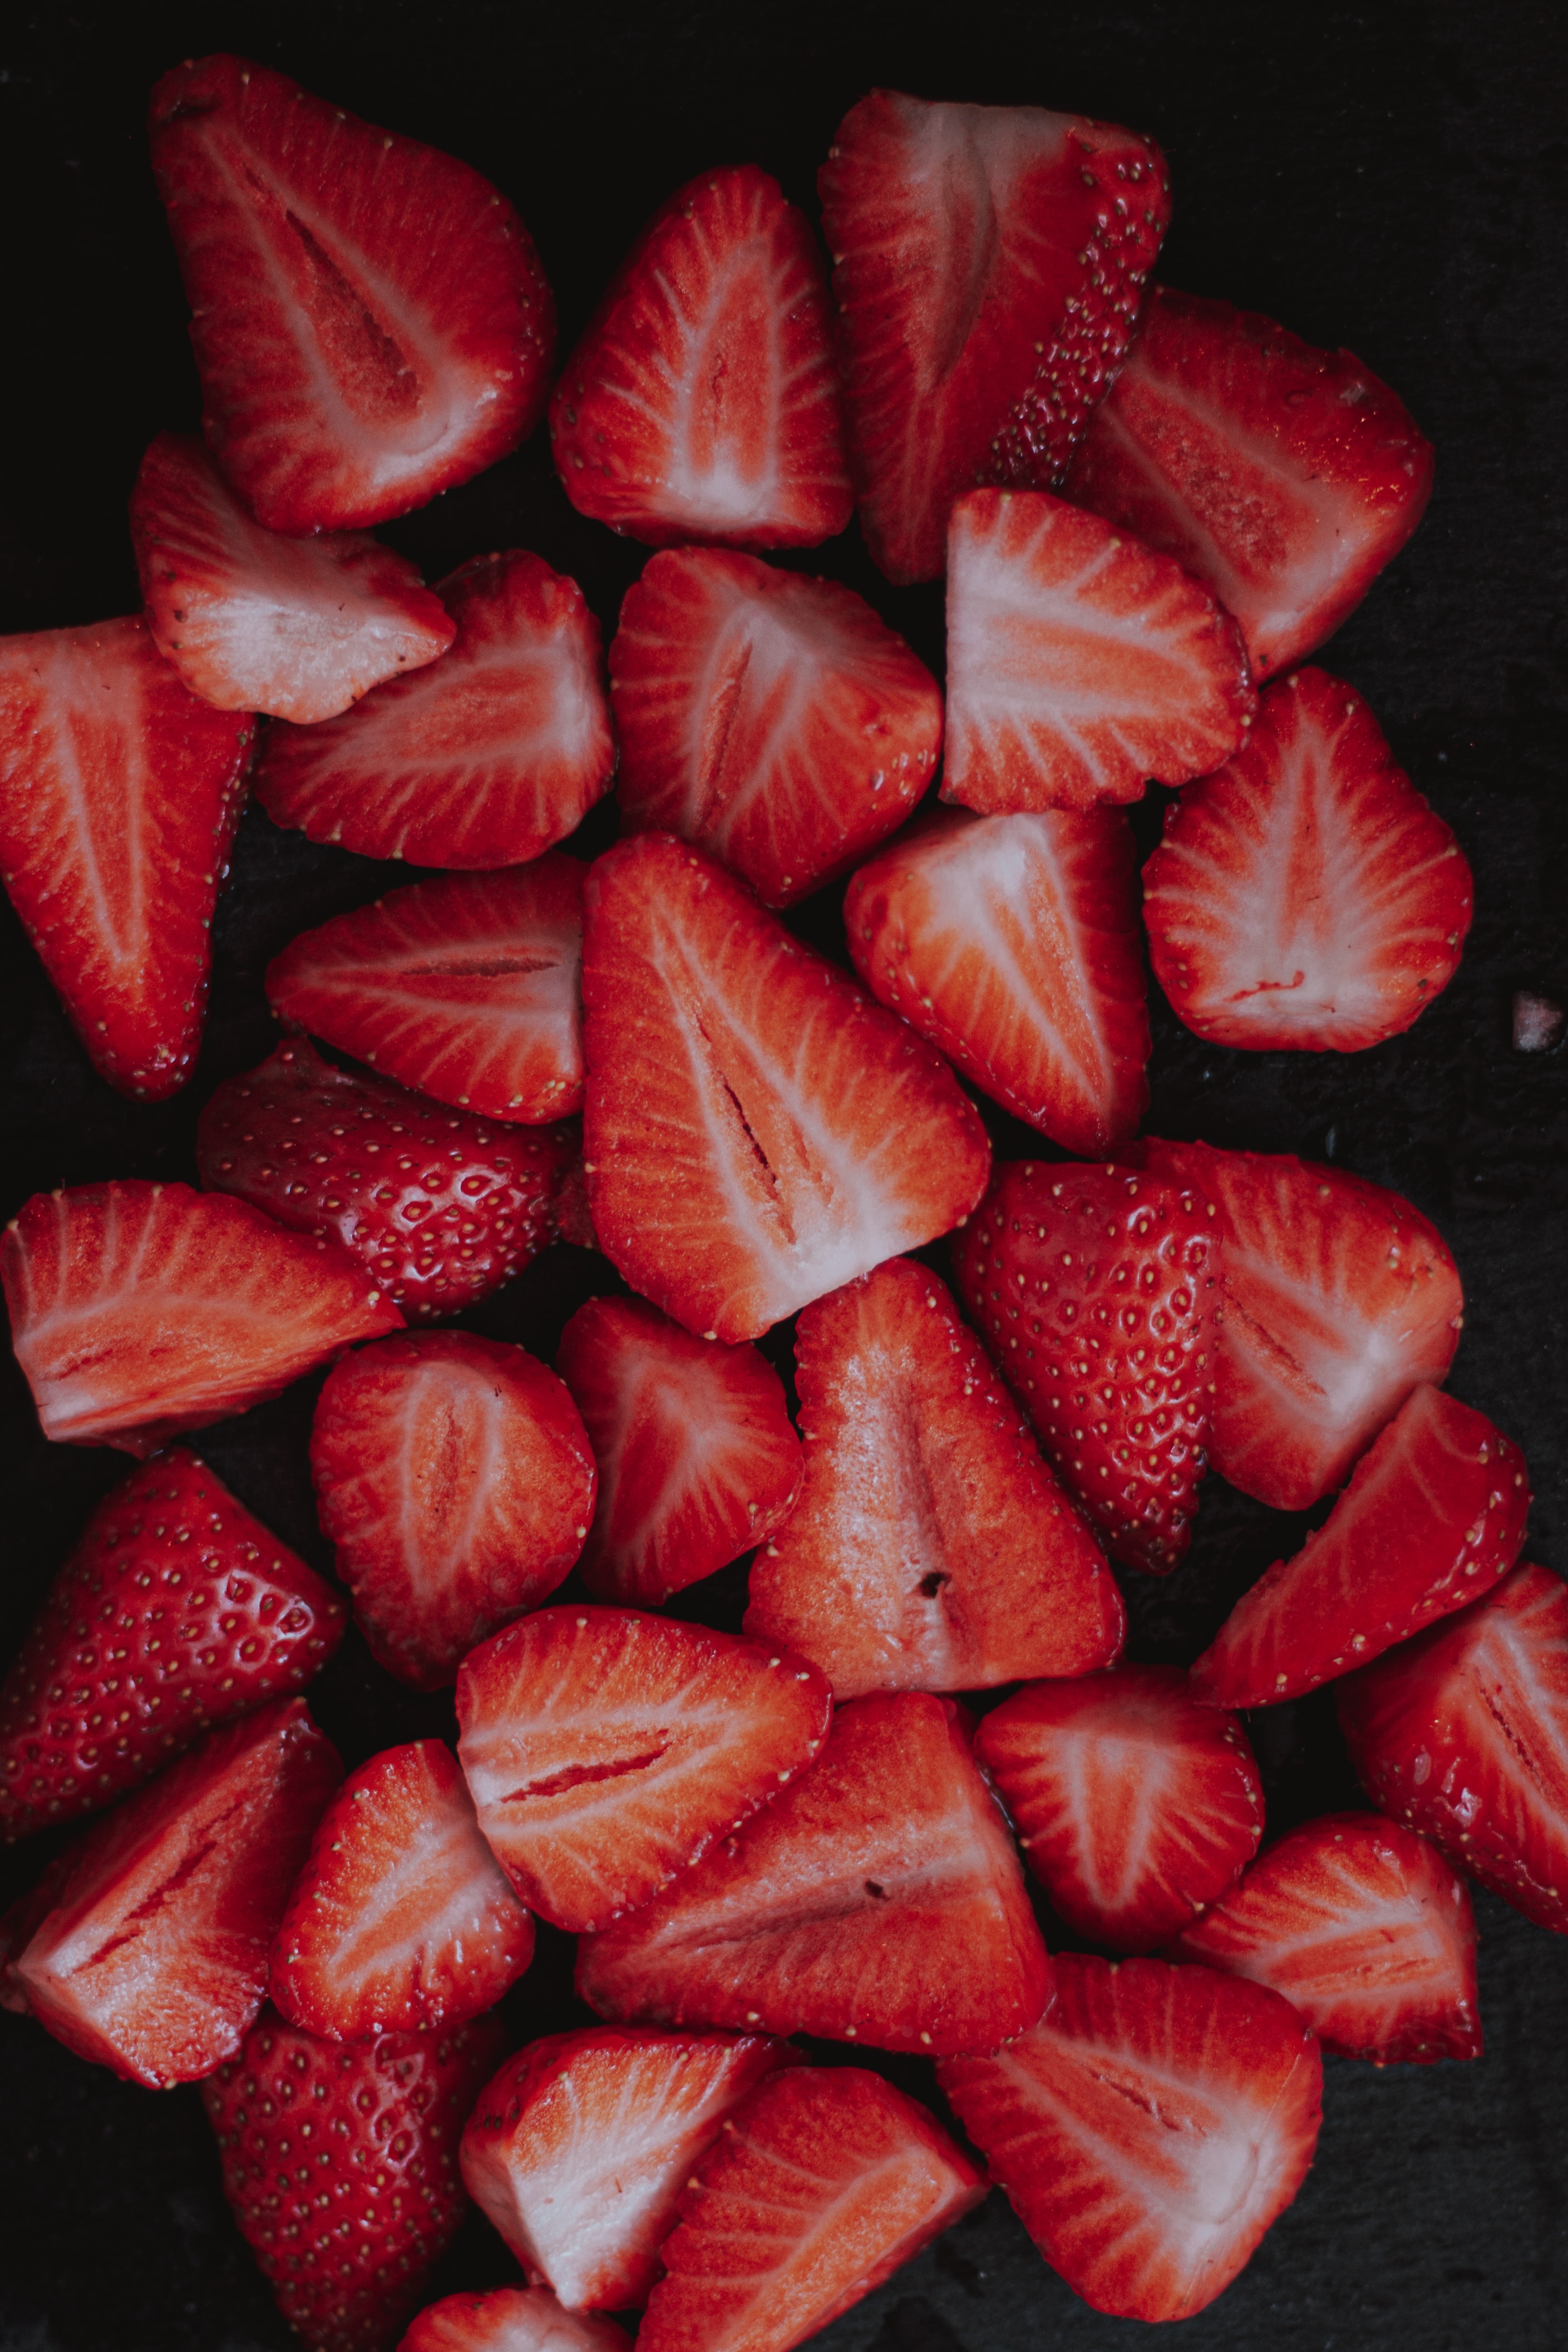 90906 免費下載壁紙 食物, 草莓, 浆果, 红色, 红色的, 成熟, 熟熟, 小叶, 多尔基 屏保和圖片